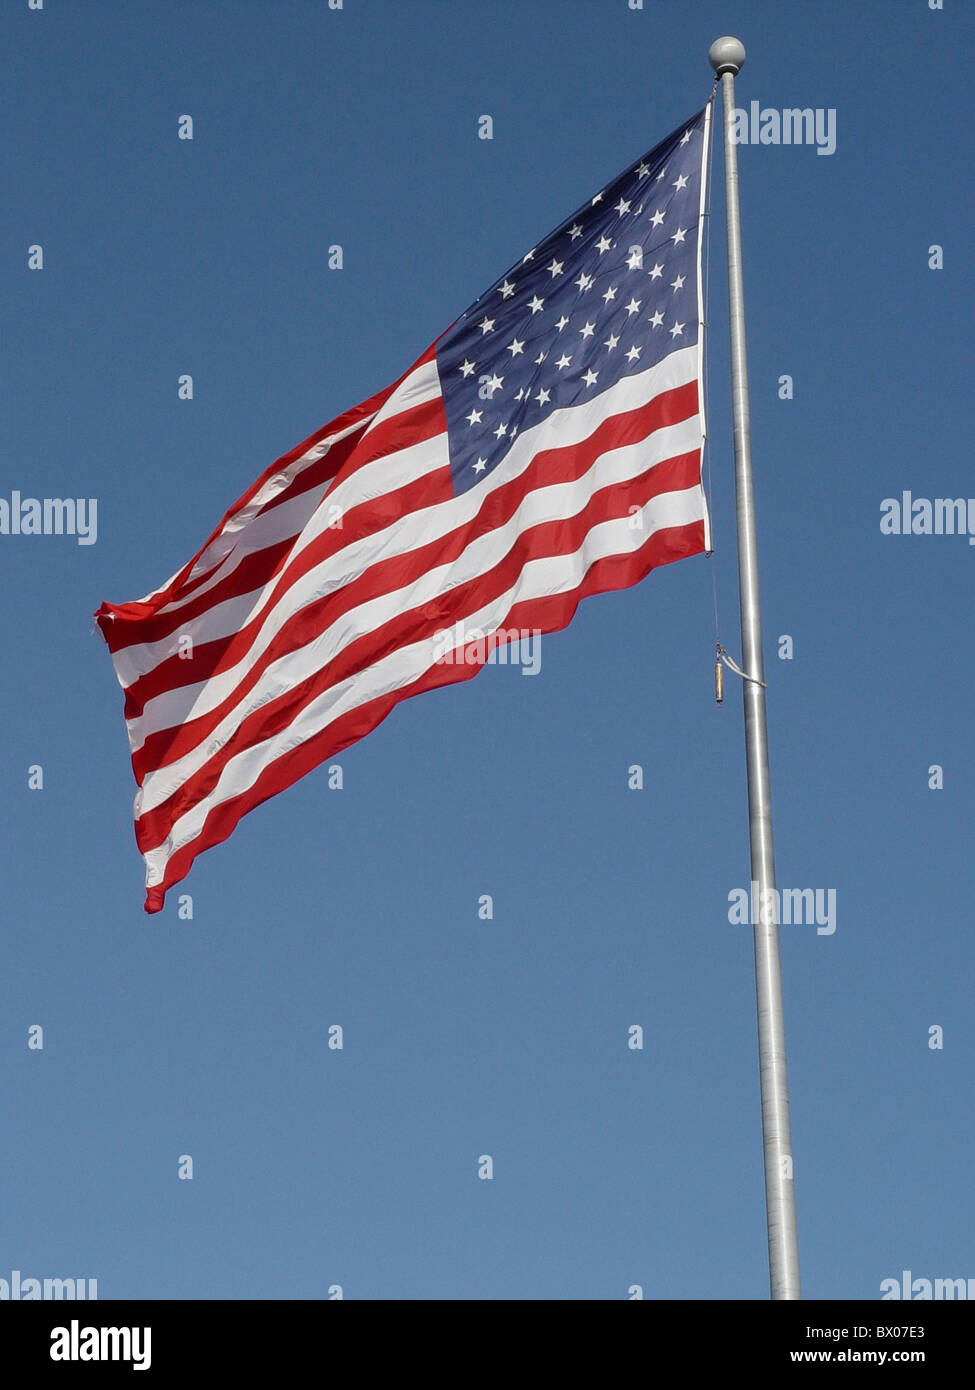 Fahne Fahnenmast Fahnenmast Flagge banner Himmel Land Fahnen Patriotismus Stare und Streifen symbol USA Amerika N Stockfoto